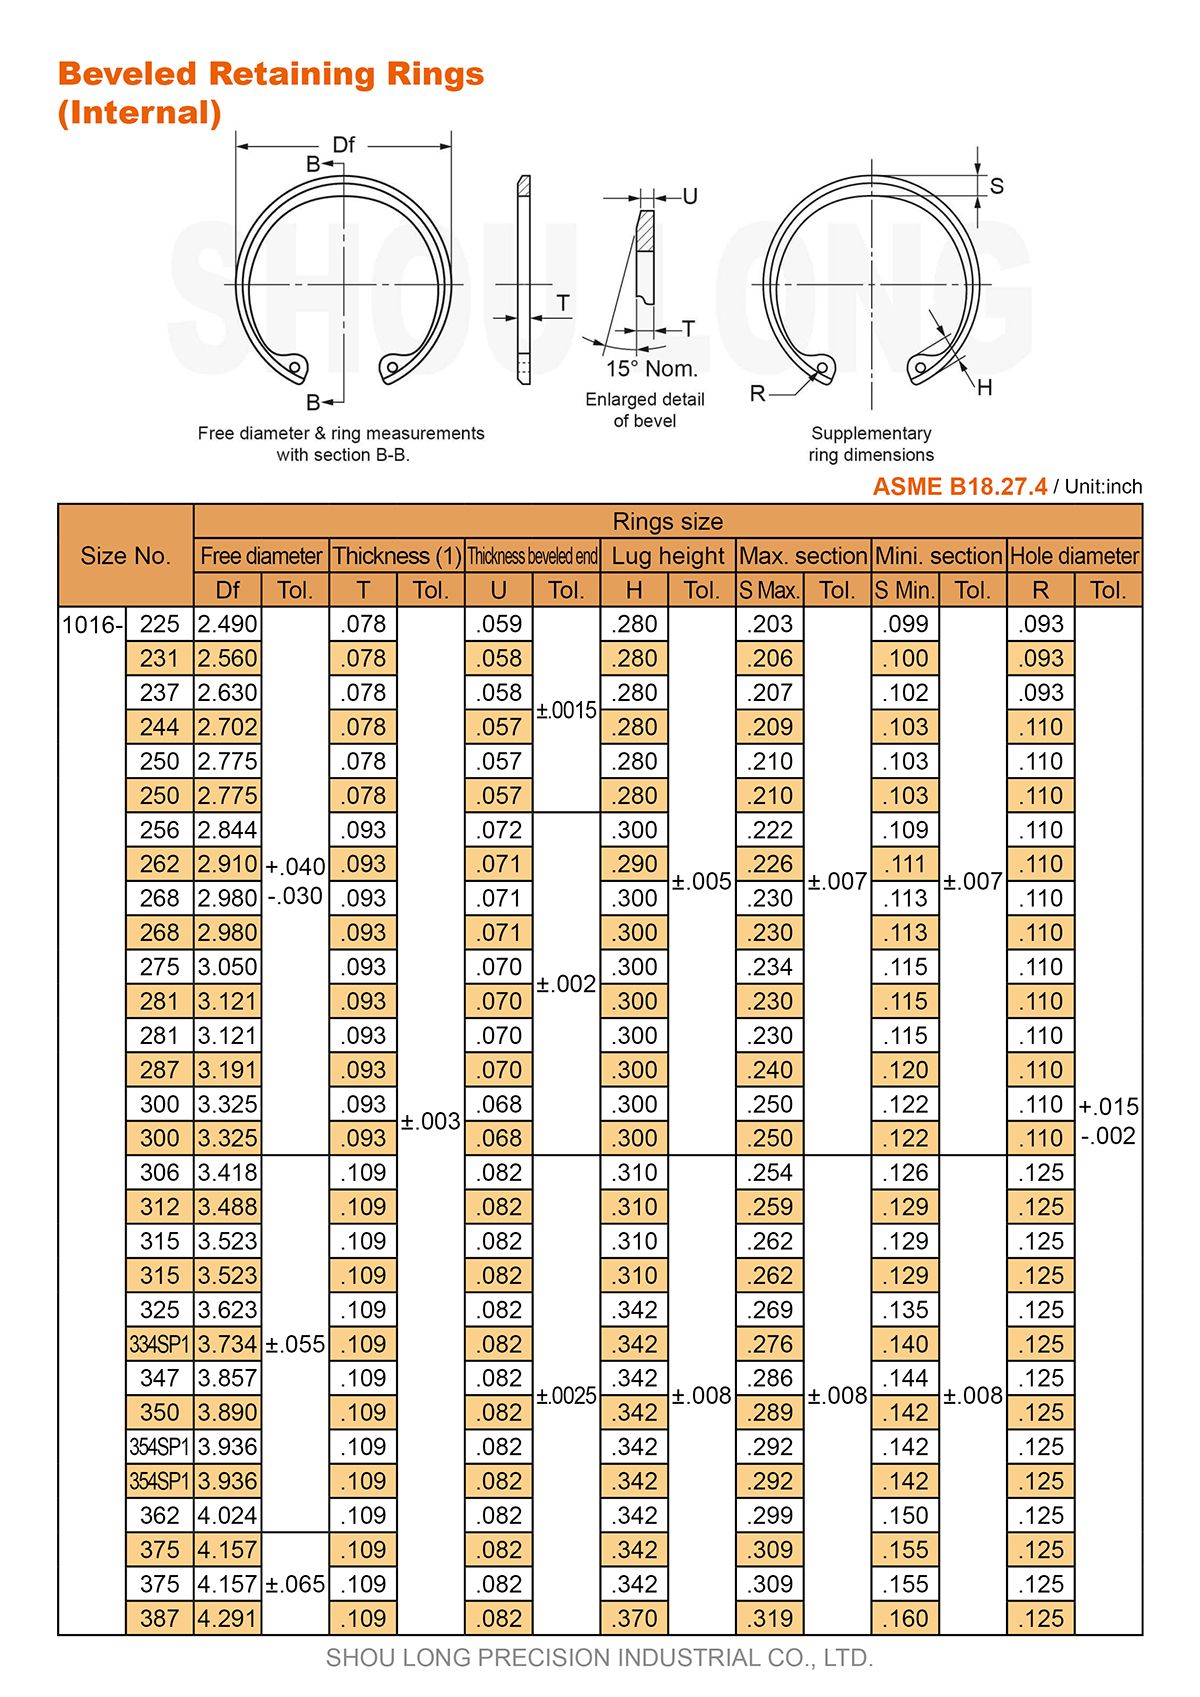 Spesifikasi Cincin Penahan Beveled Inch untuk Lubang ASME/ANSI B18.27.4-2